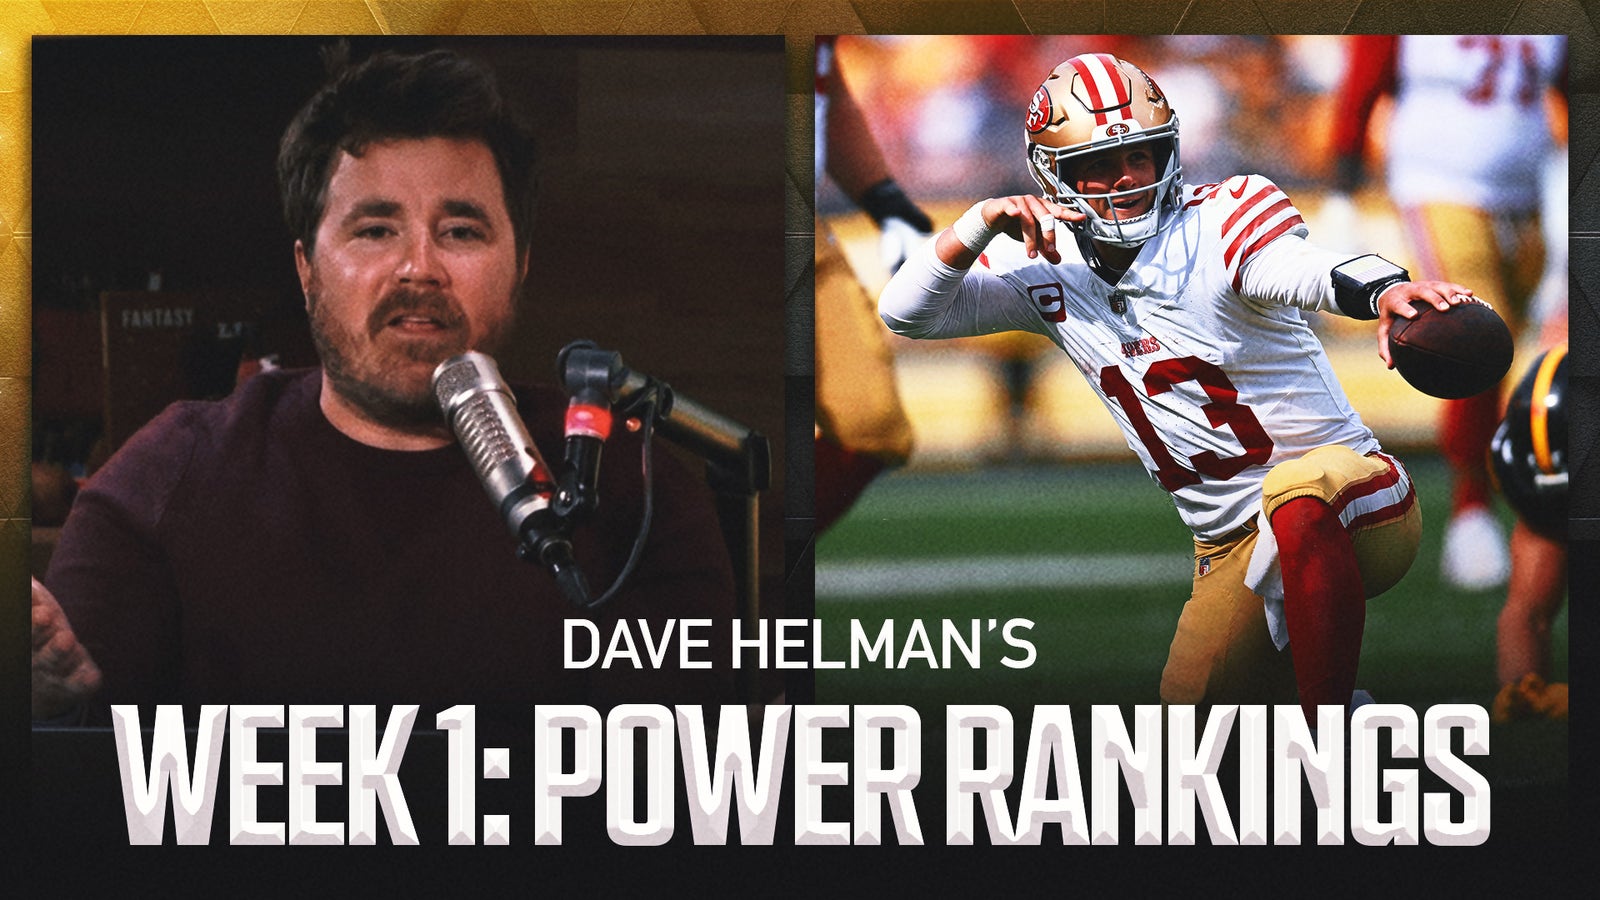 Dave Helman looks ahead to Week 2 of the NFL season as he reveals his power rankings